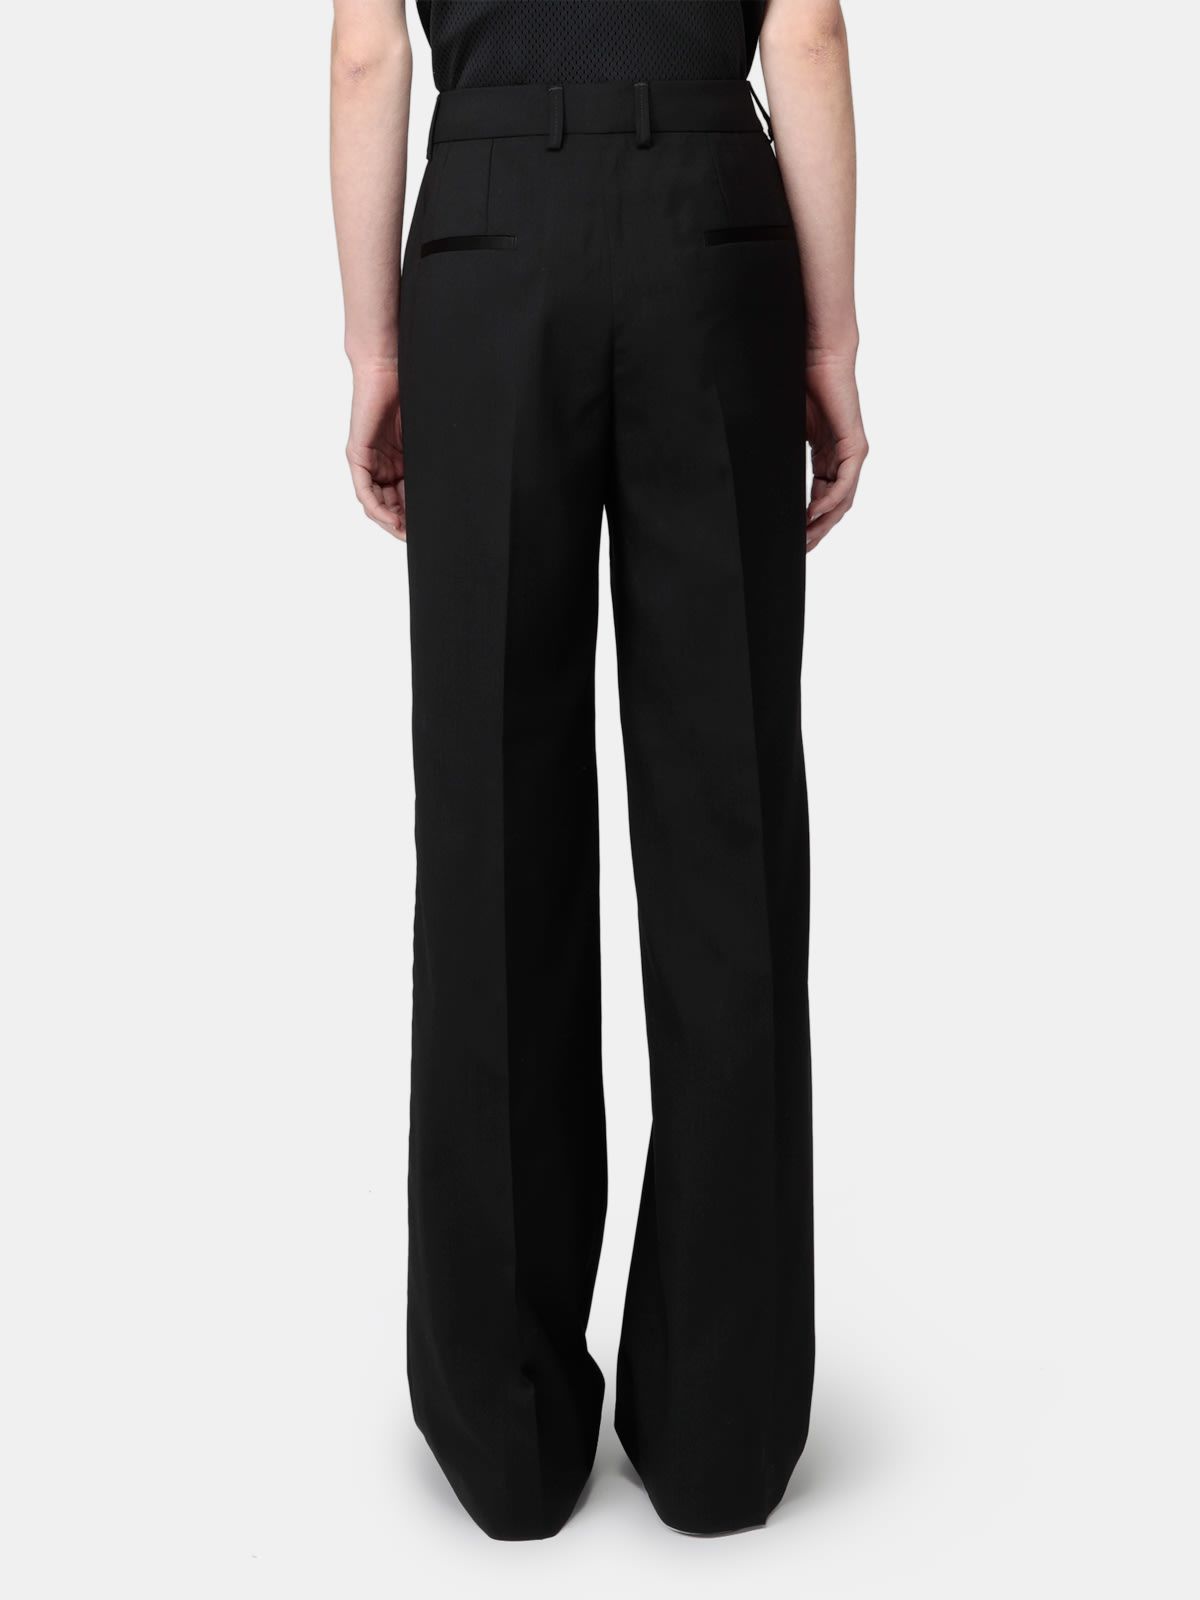 Abigail black high-waist trousers